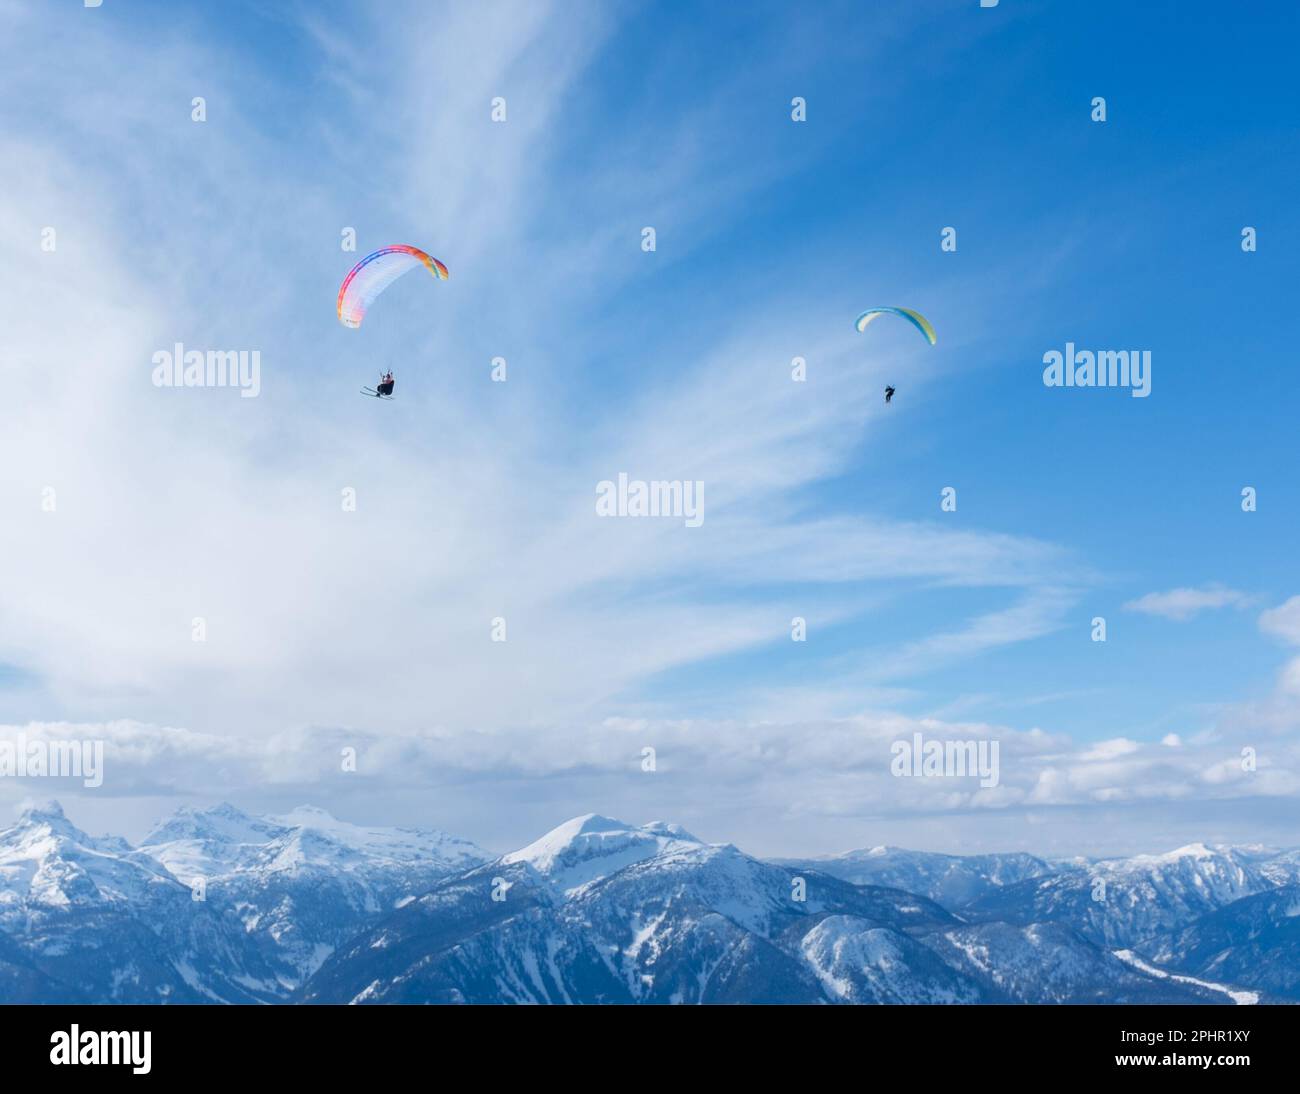 Schnellfliegen oder Parasailing mit Skifahren ist eine großartige Möglichkeit, das Columbia River Valley in der Nähe von Revelstoke, British Columbia, Kanada, zu sehen. Stockfoto